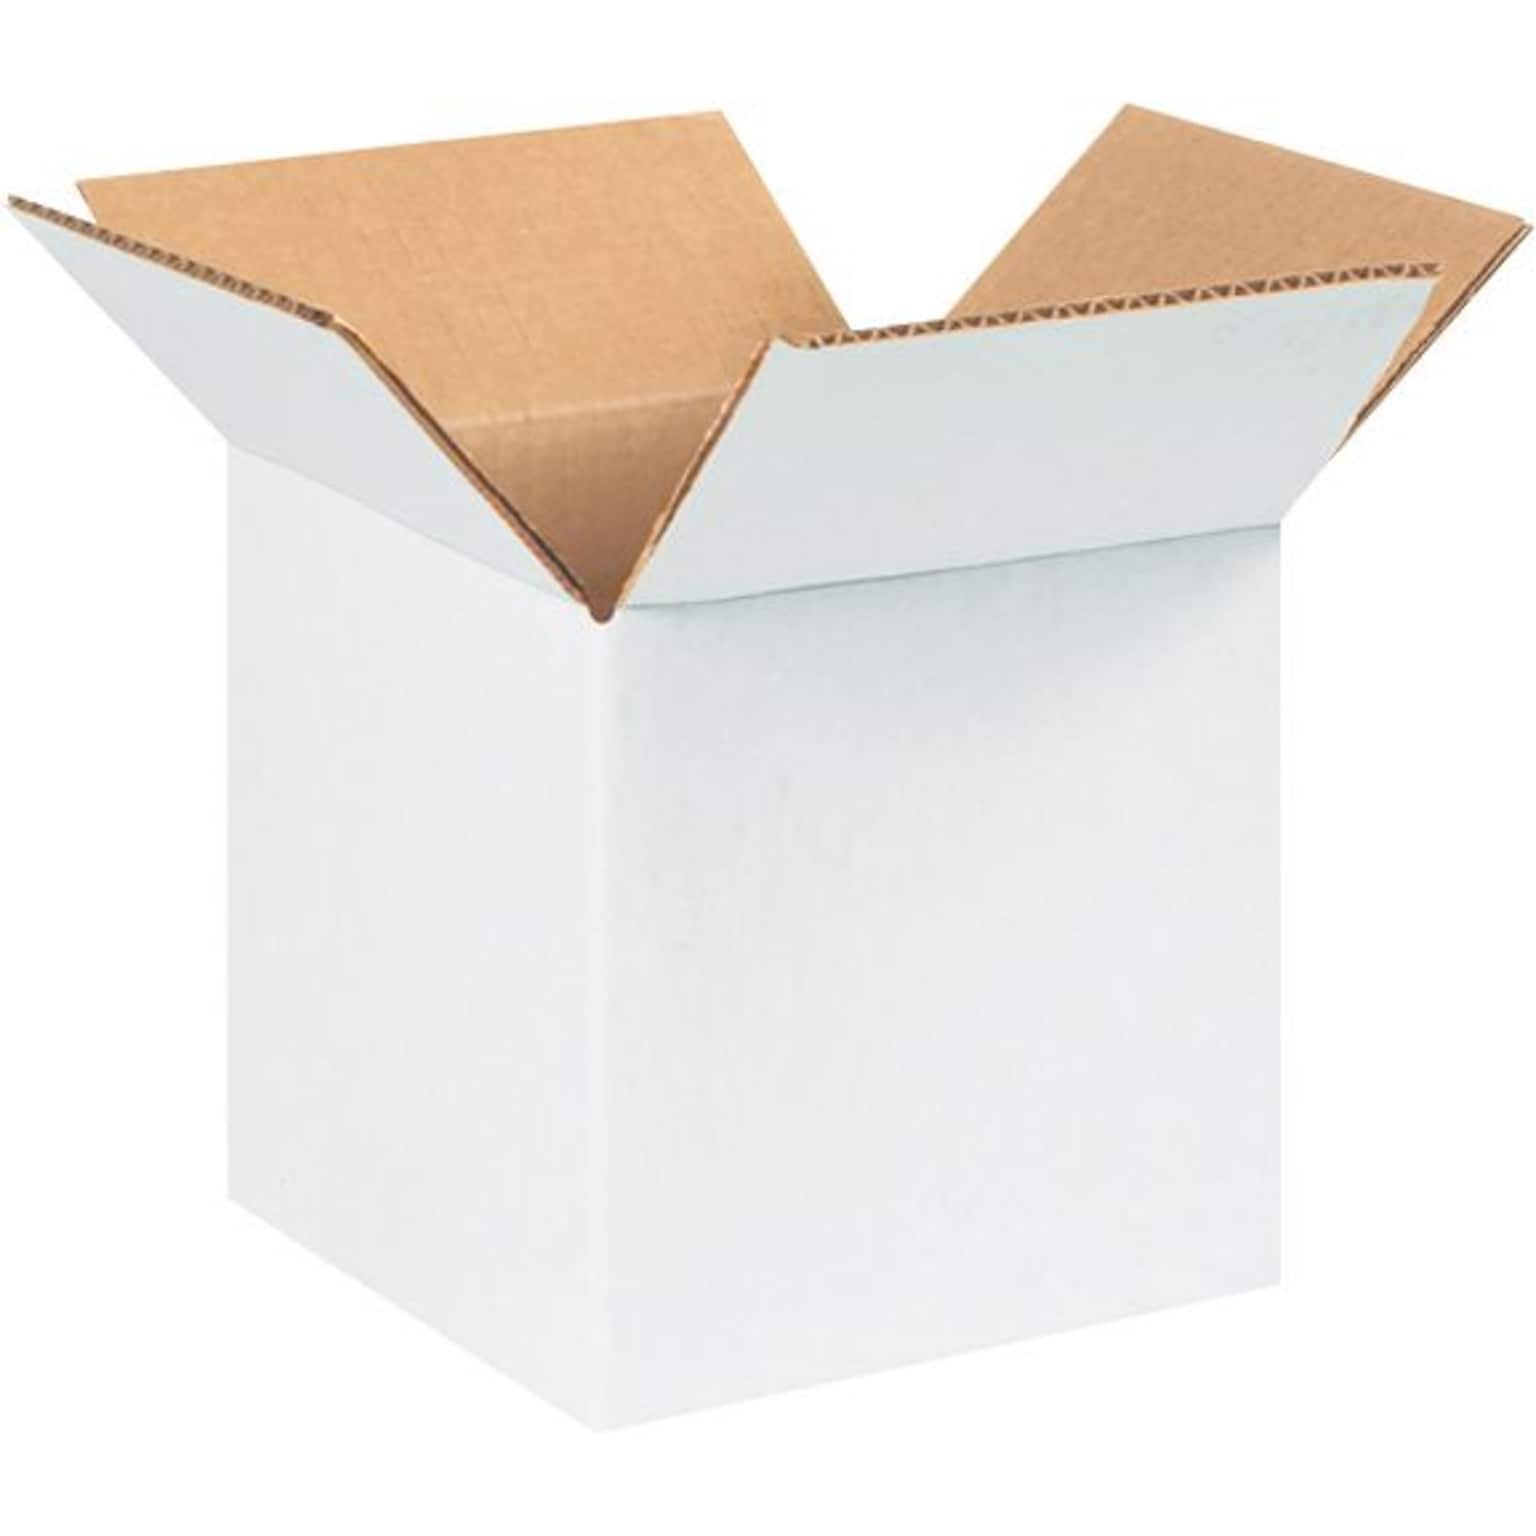 5 x 5 x 5 Shipping Boxes, 32 ECT, White, 25/Bundle (555W)